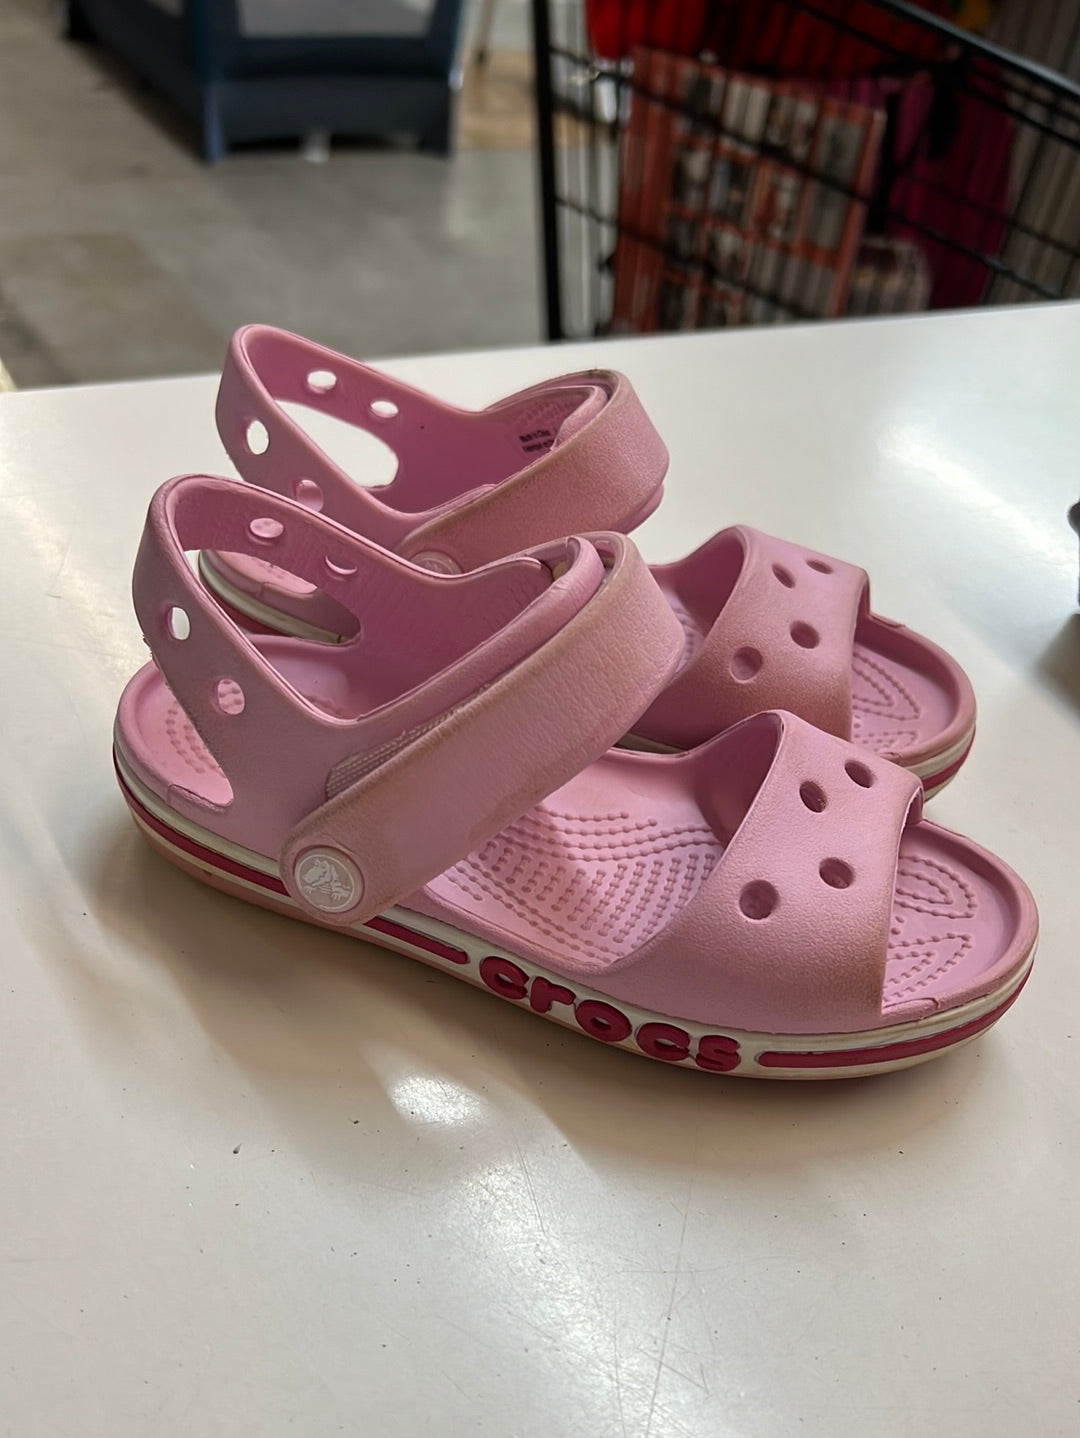 Croc Sandals Pink, Size 10c